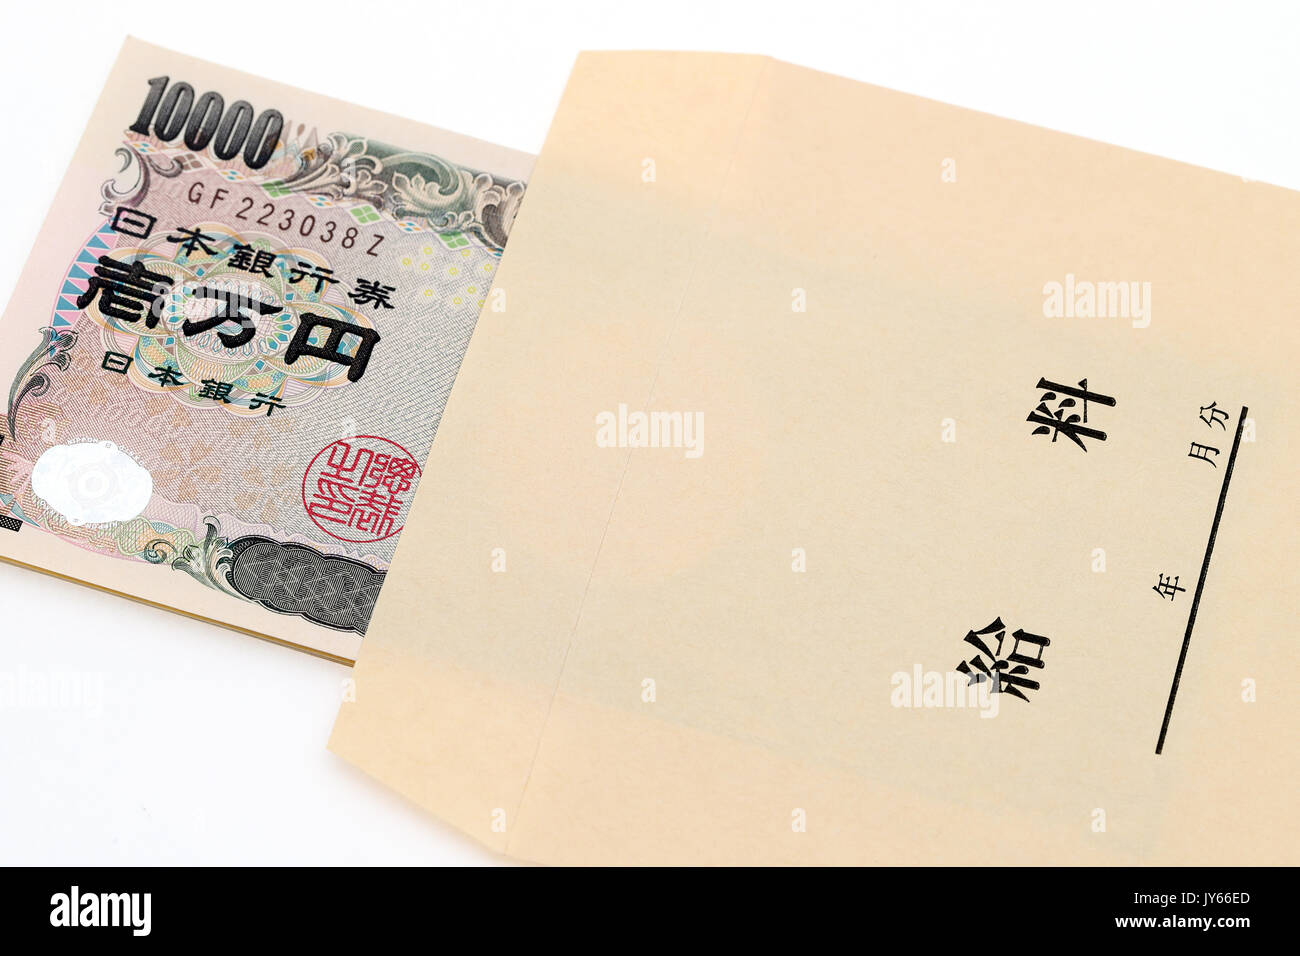 Japanese money and salary envelope on white background Stock Photo